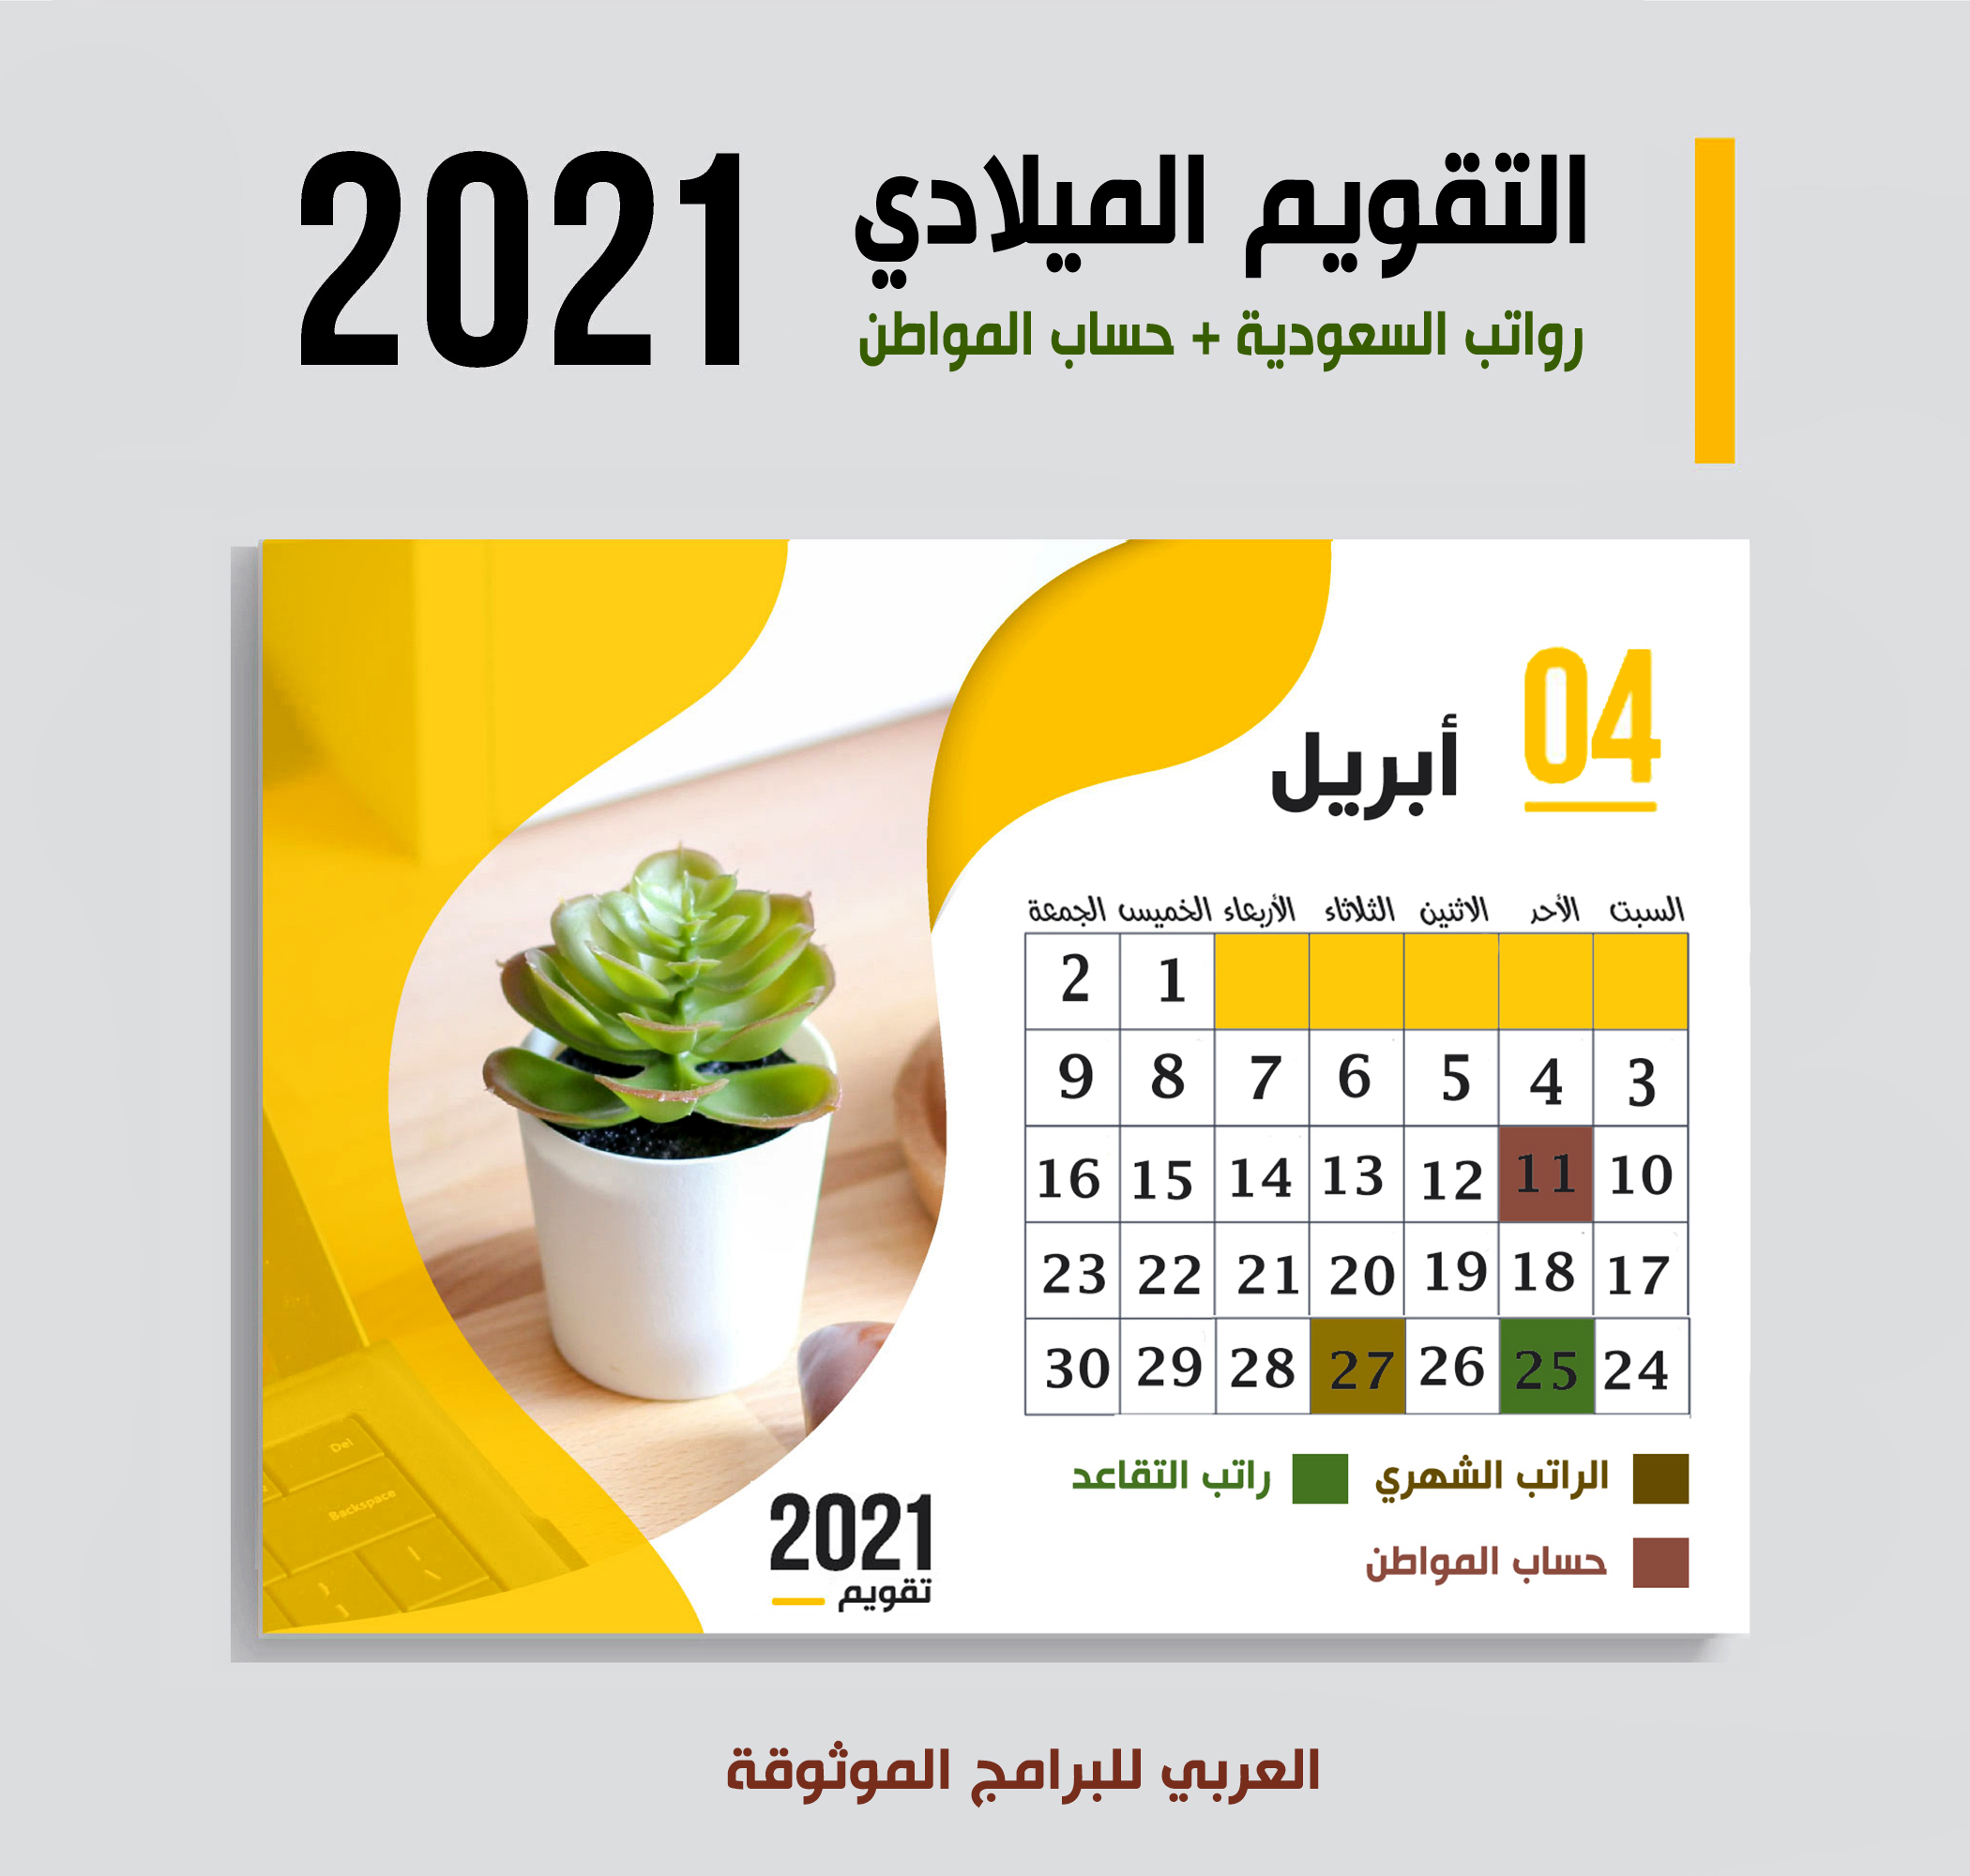 موعد صرف رواتب السعودية حسب التقويم الميلادي 2021 موعد حساب المواطن + صرف رواتب التقاعد